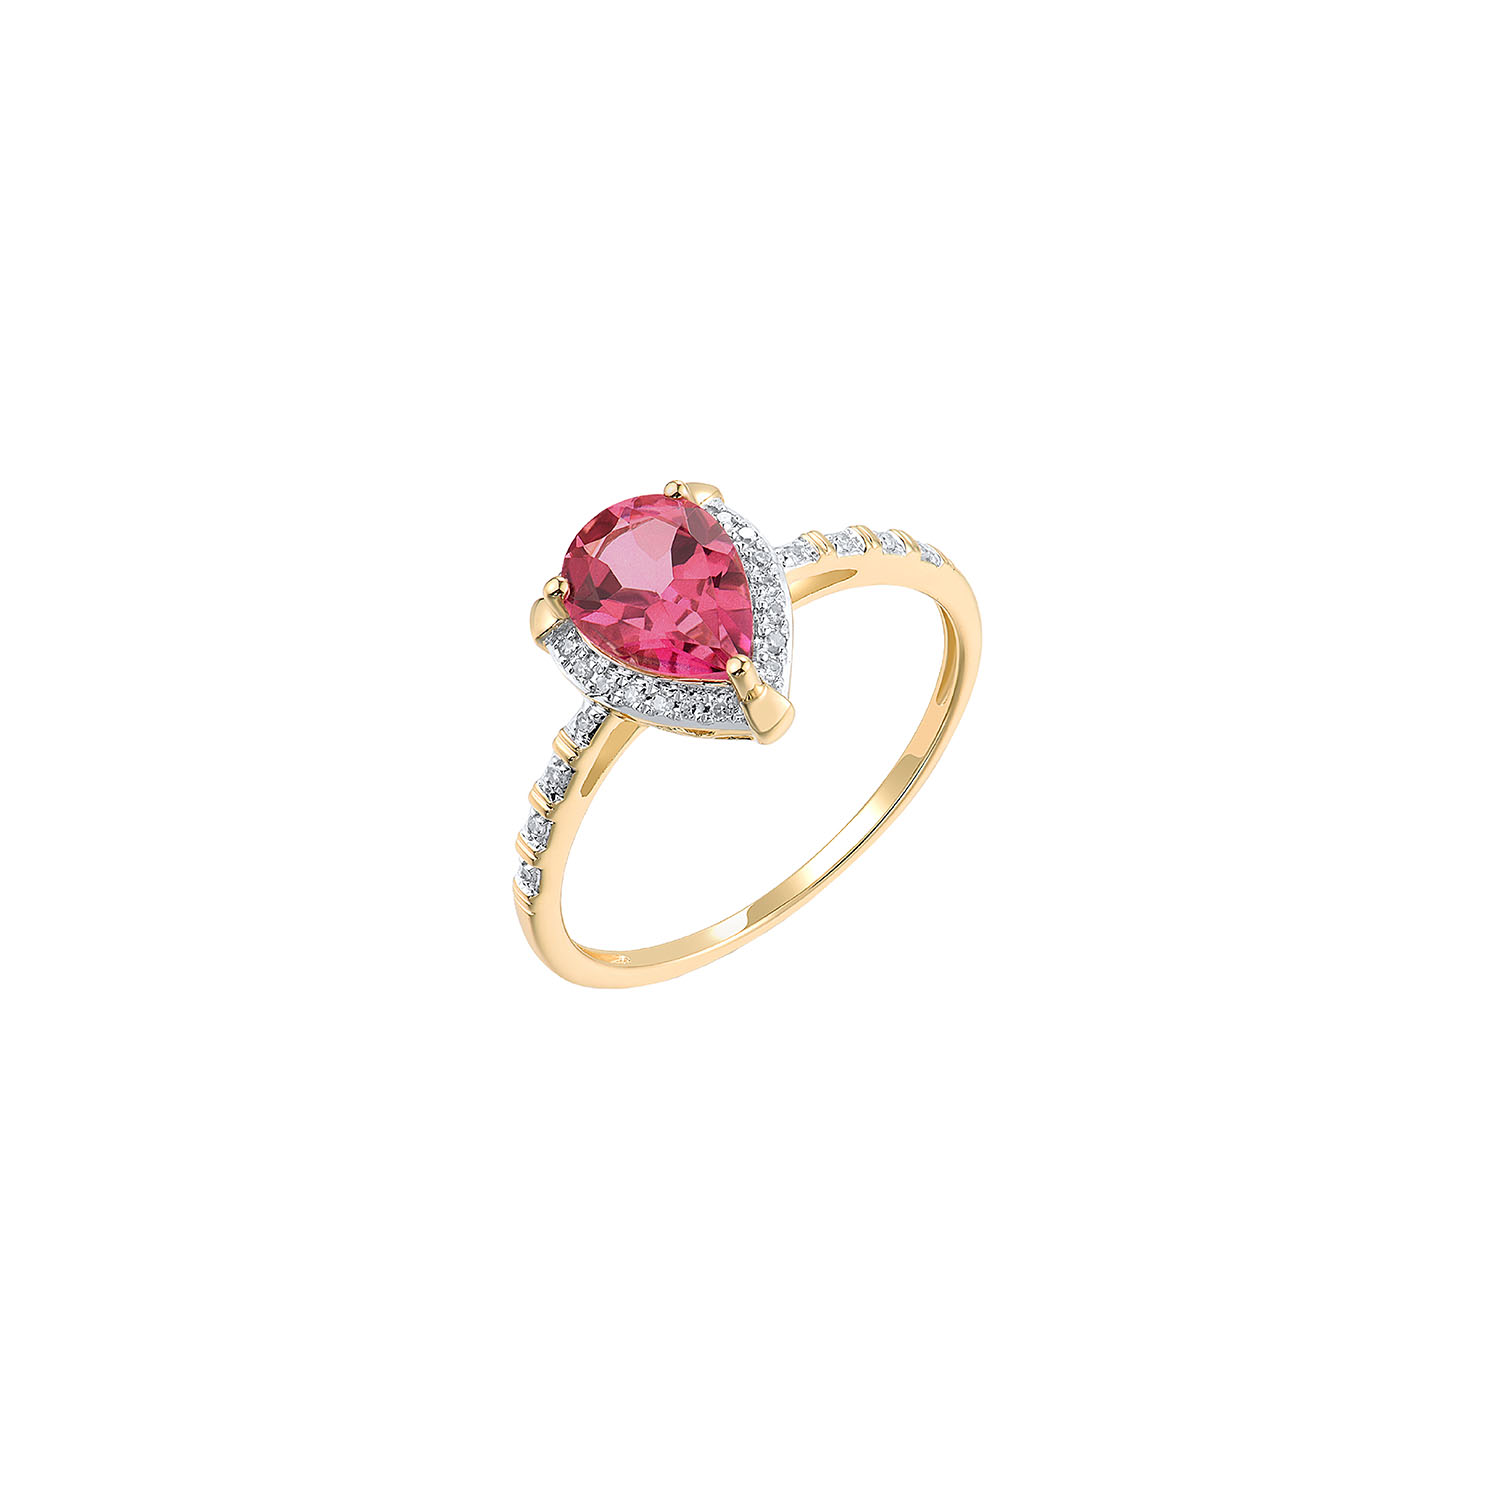 Δαχτυλίδι Secret Garden από χρυσό 14K με ροζ τοπάζι και διαμάντια μπριγιάν